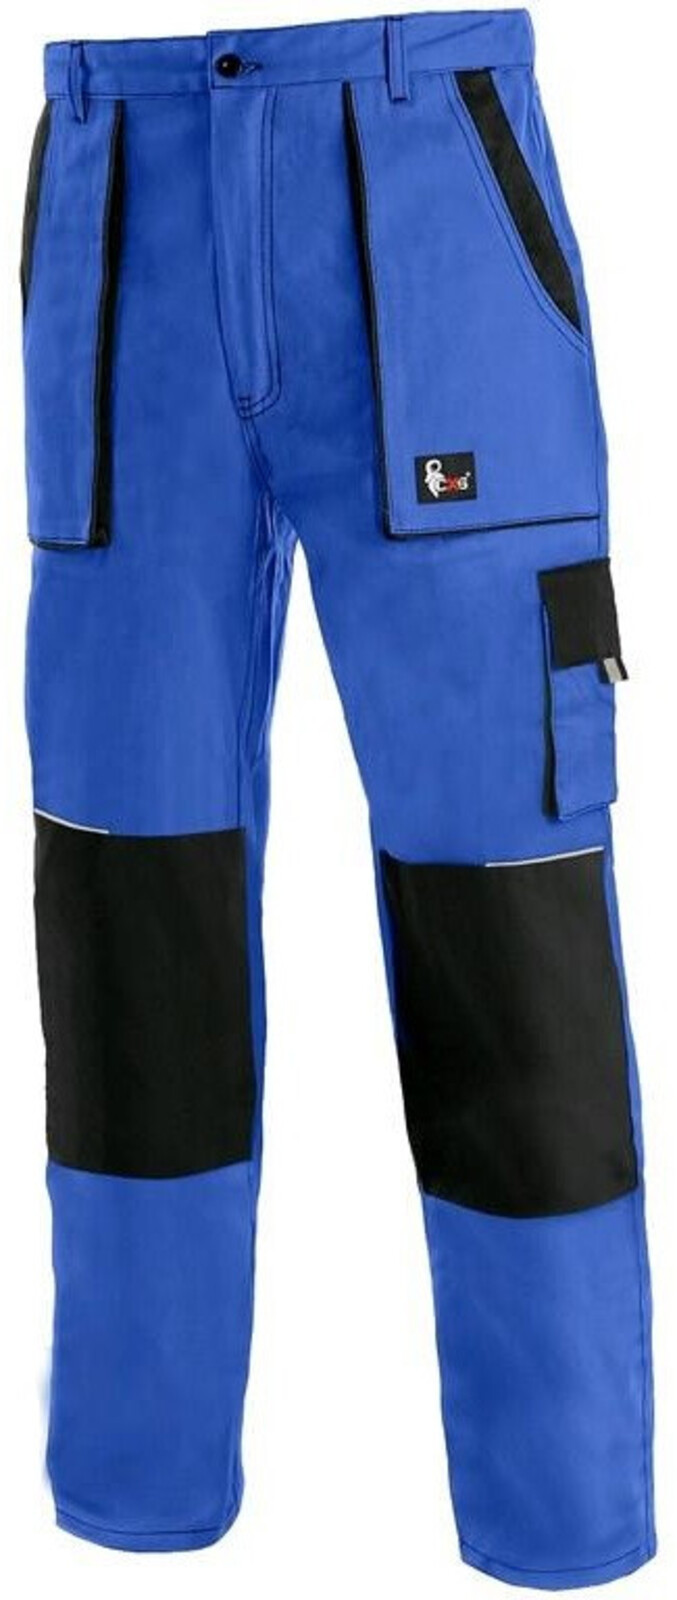 Pánske zateplené montérky CXS Luxy Jakub - veľkosť: 64-66, farba: modrá/čierna